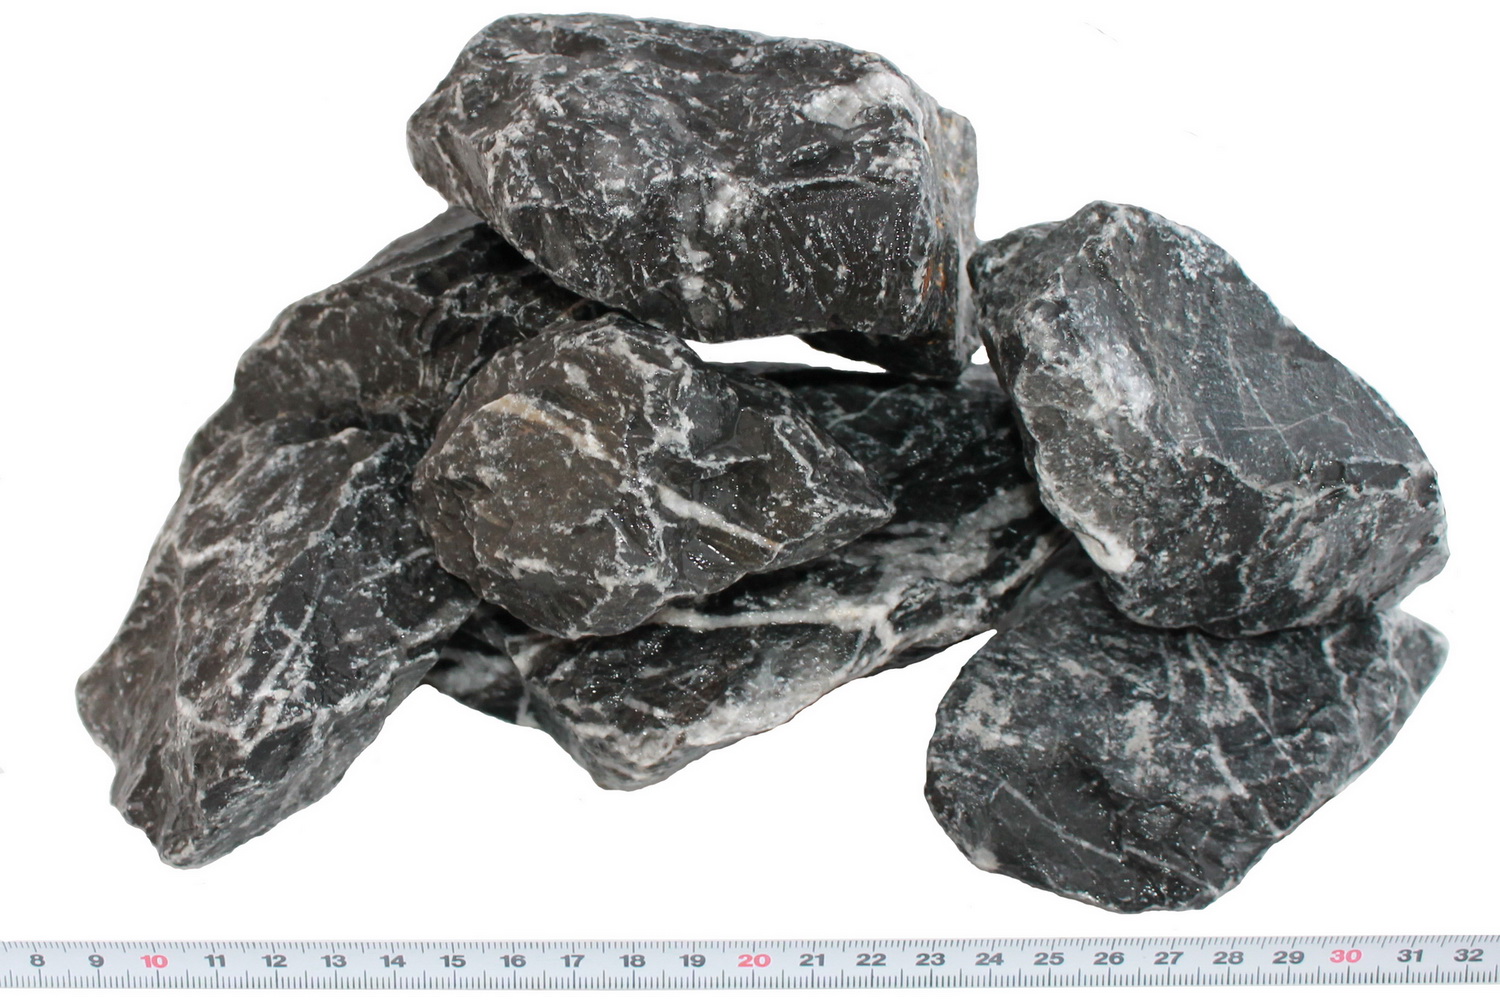 Alps Stones 60-150mm